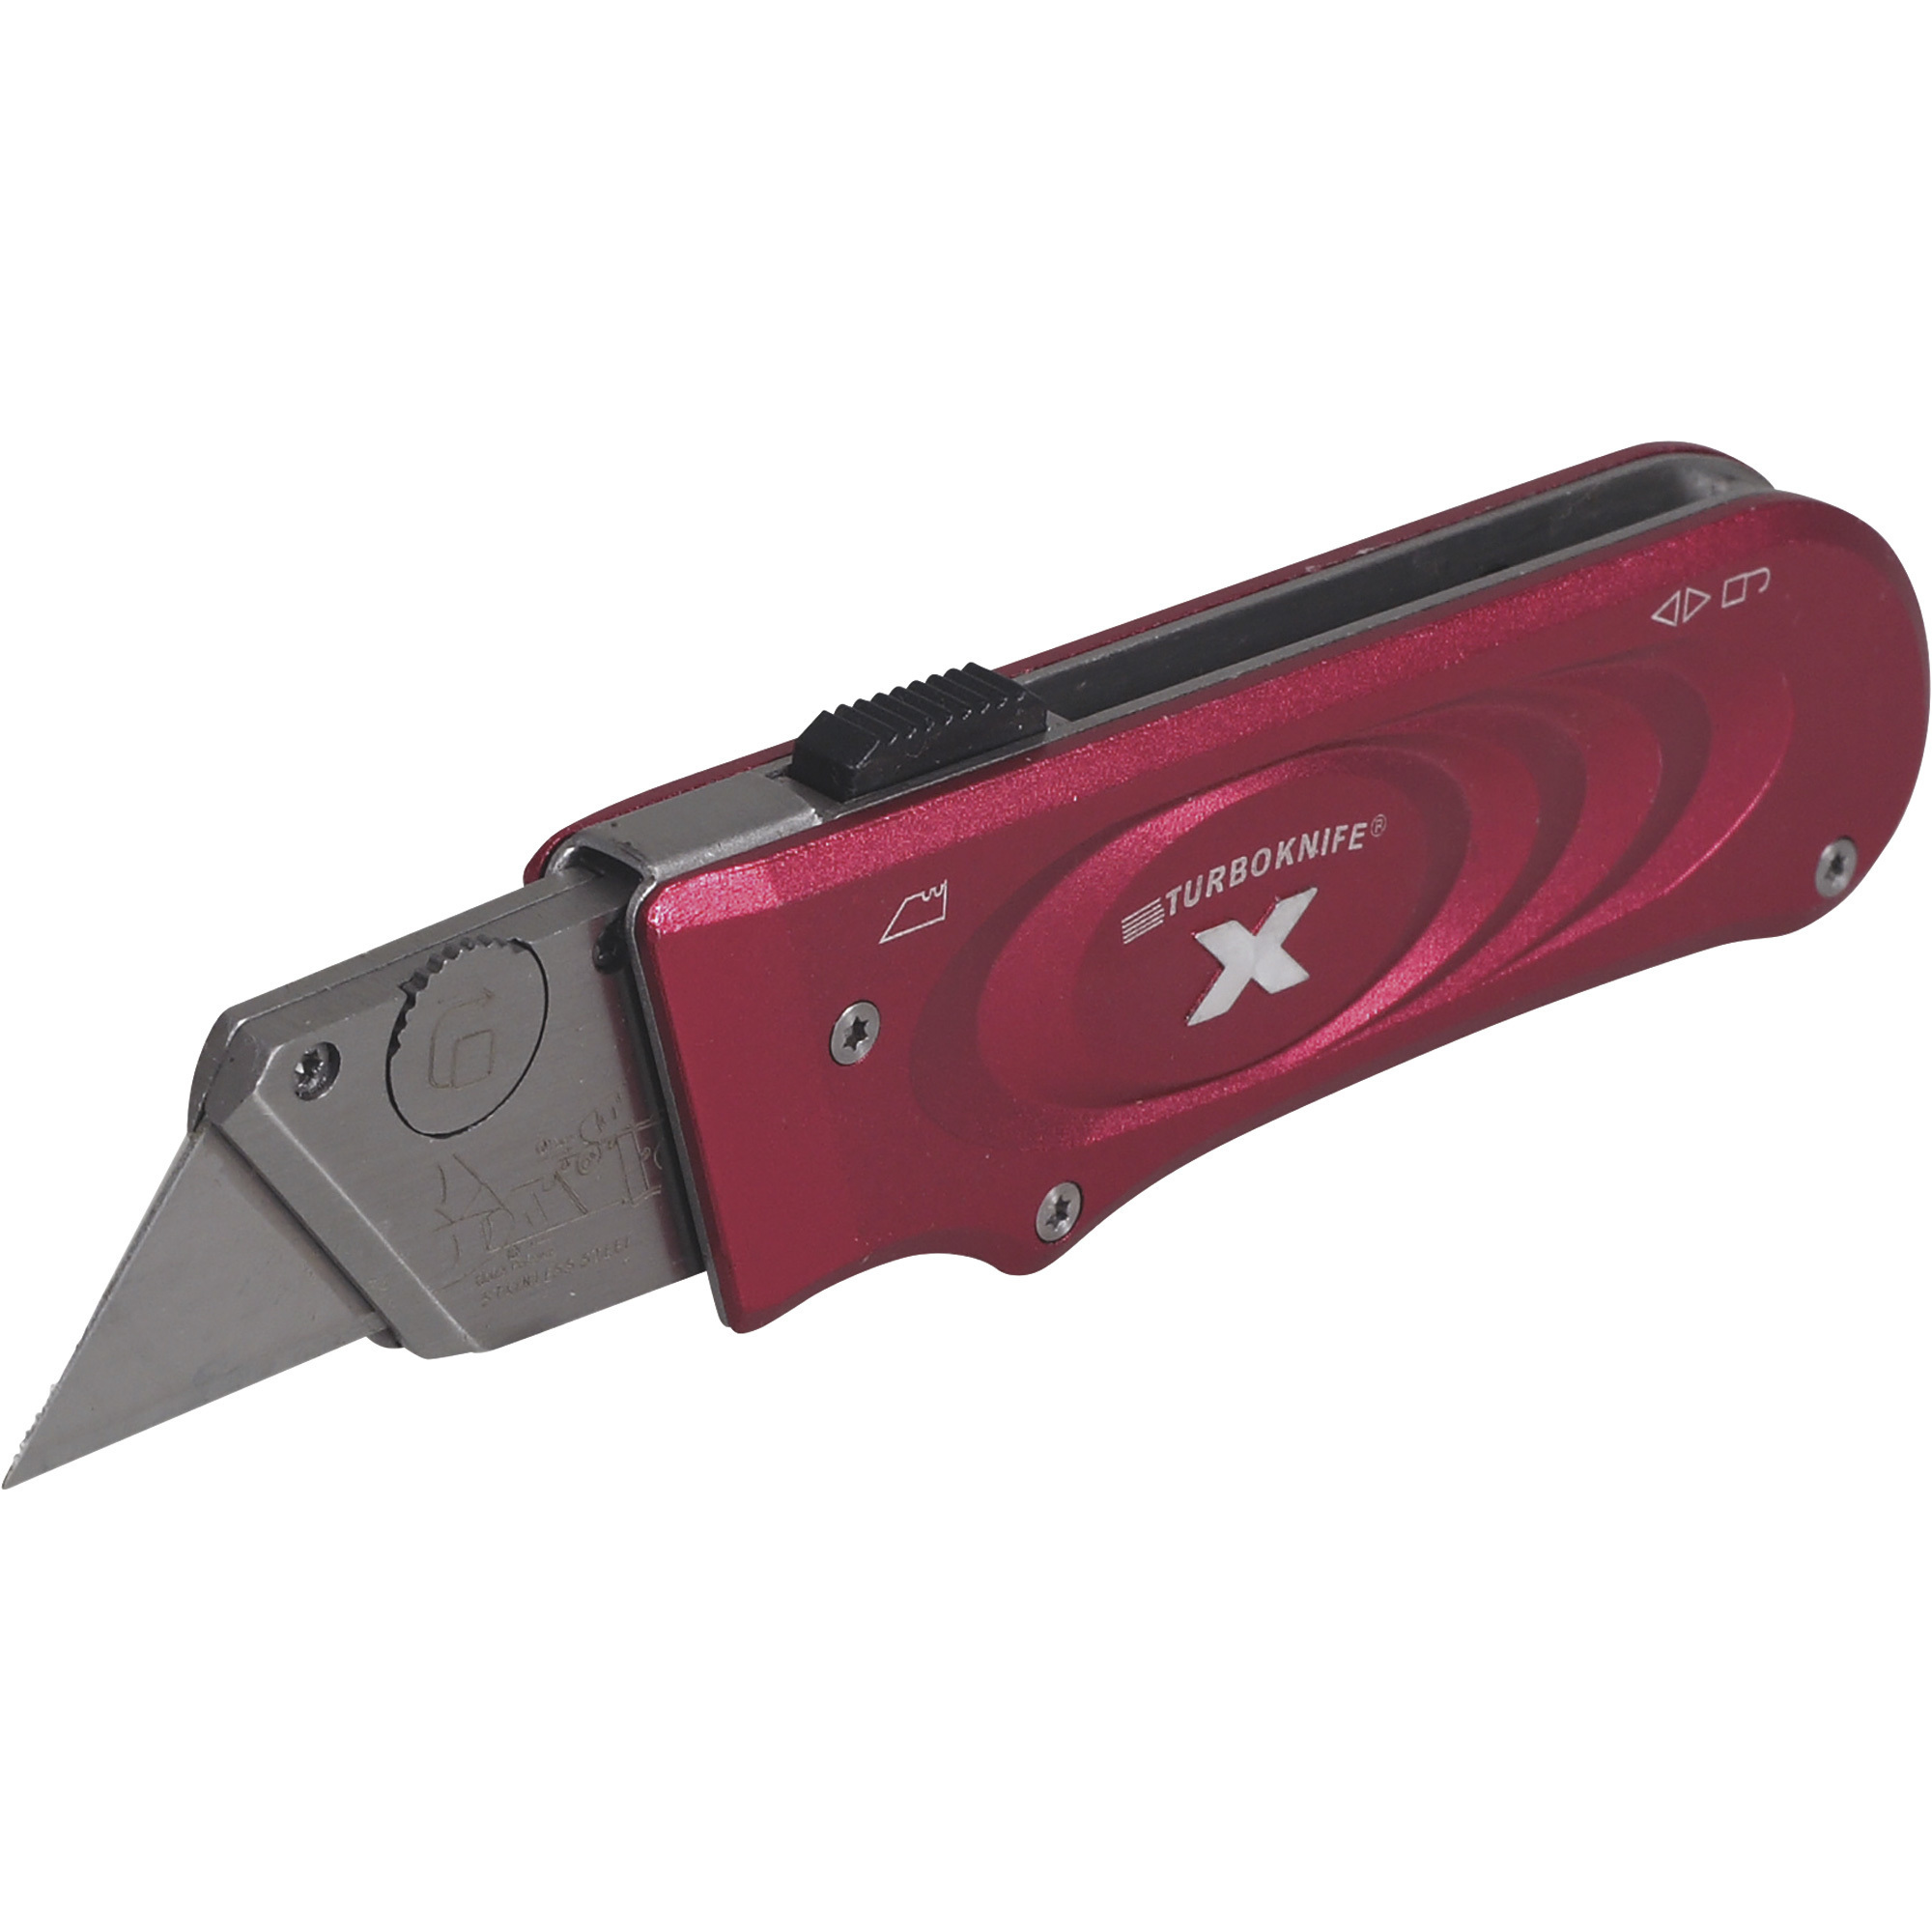 Olympia Tools Turboknife X â Red, Model 33-132